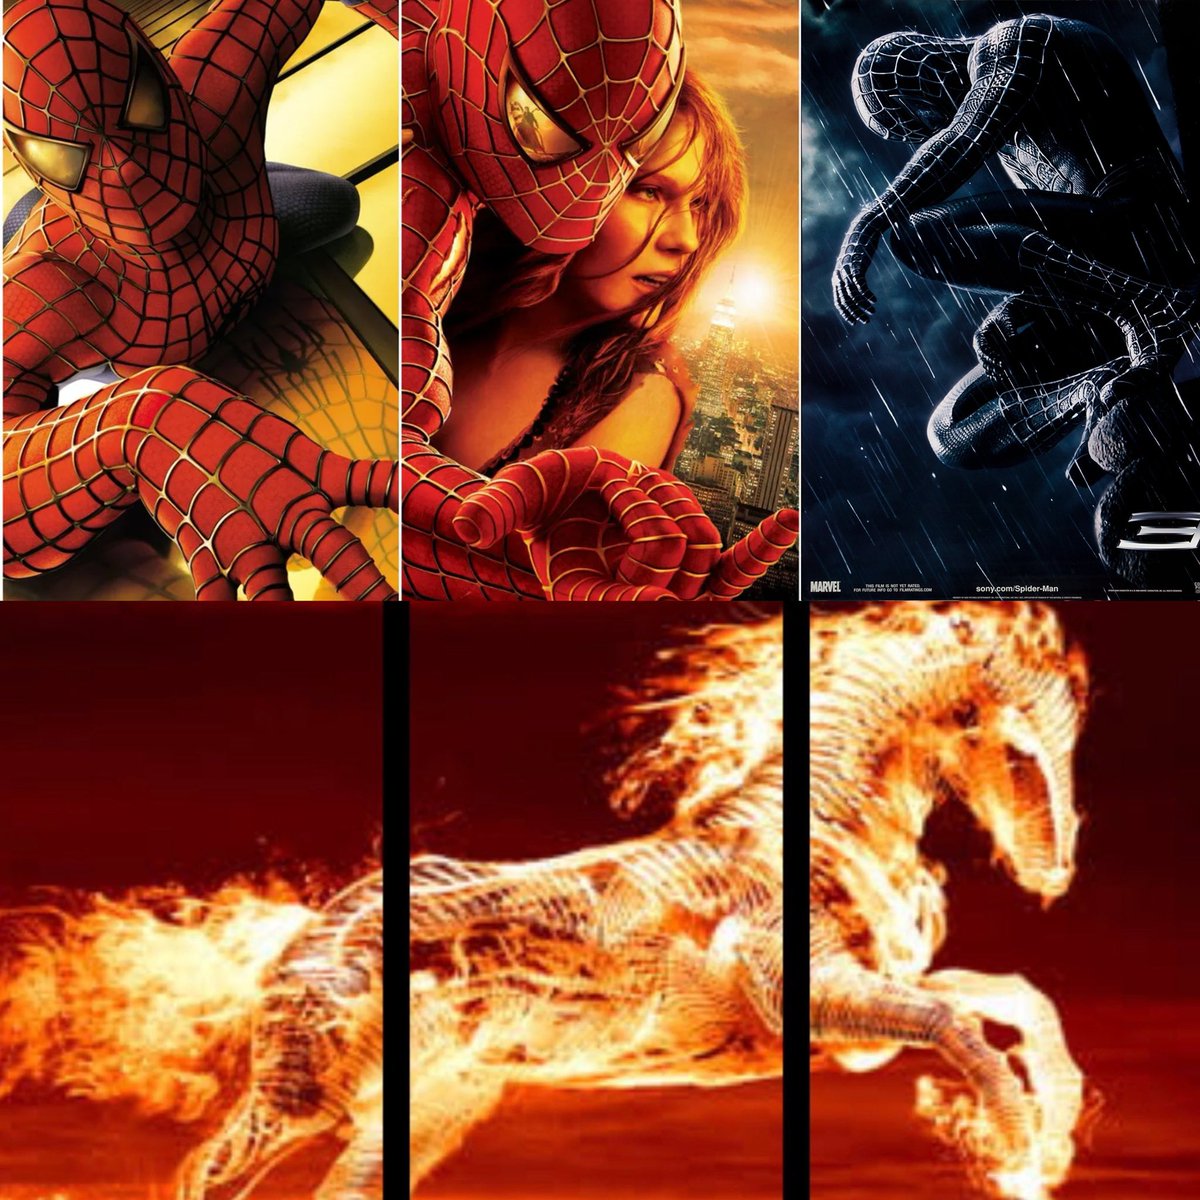 RT @blurayangel: Tobey Maguire’s Spider-Man Trilogy: https://t.co/DMtStbHz32